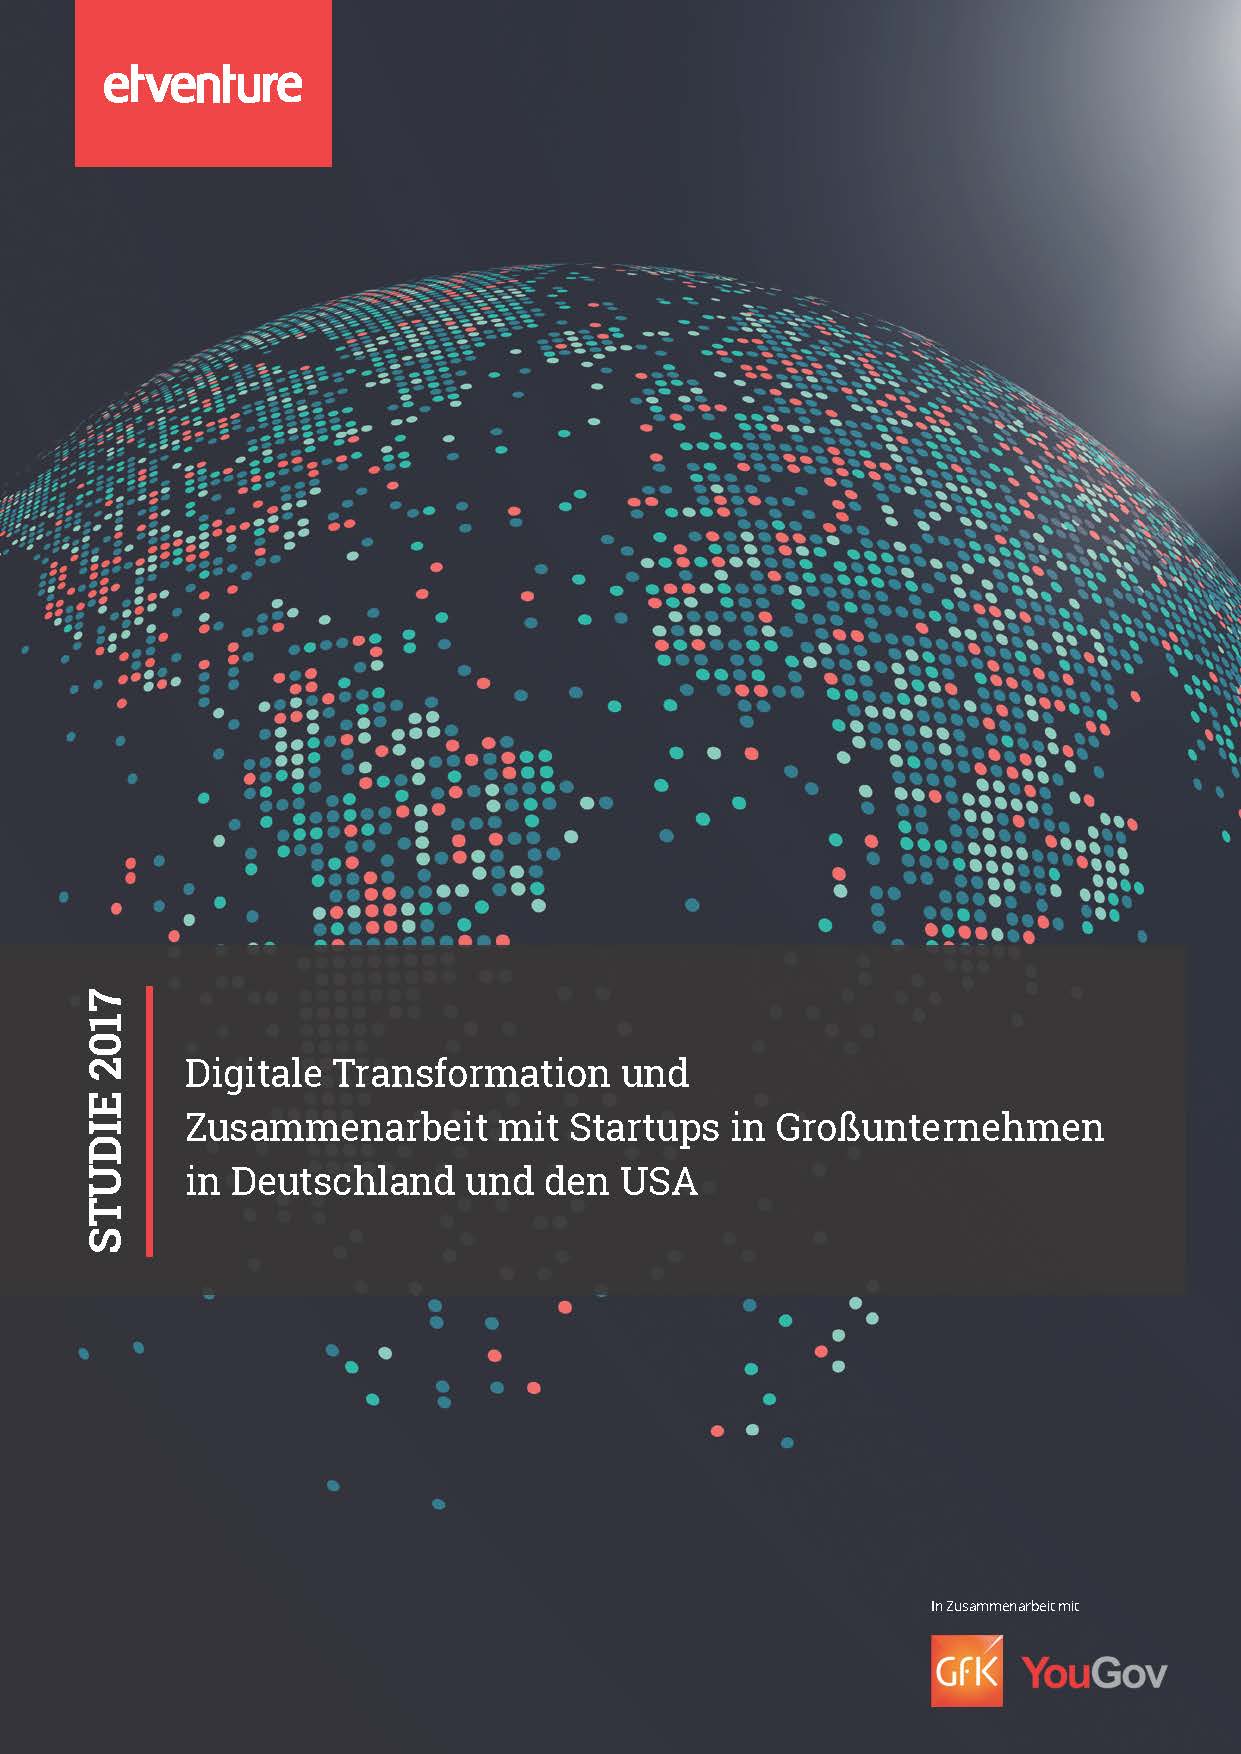 Digitale Transformation und Zusammenarbeit mit Startups in Großunternehmen in Deutschland und den USA